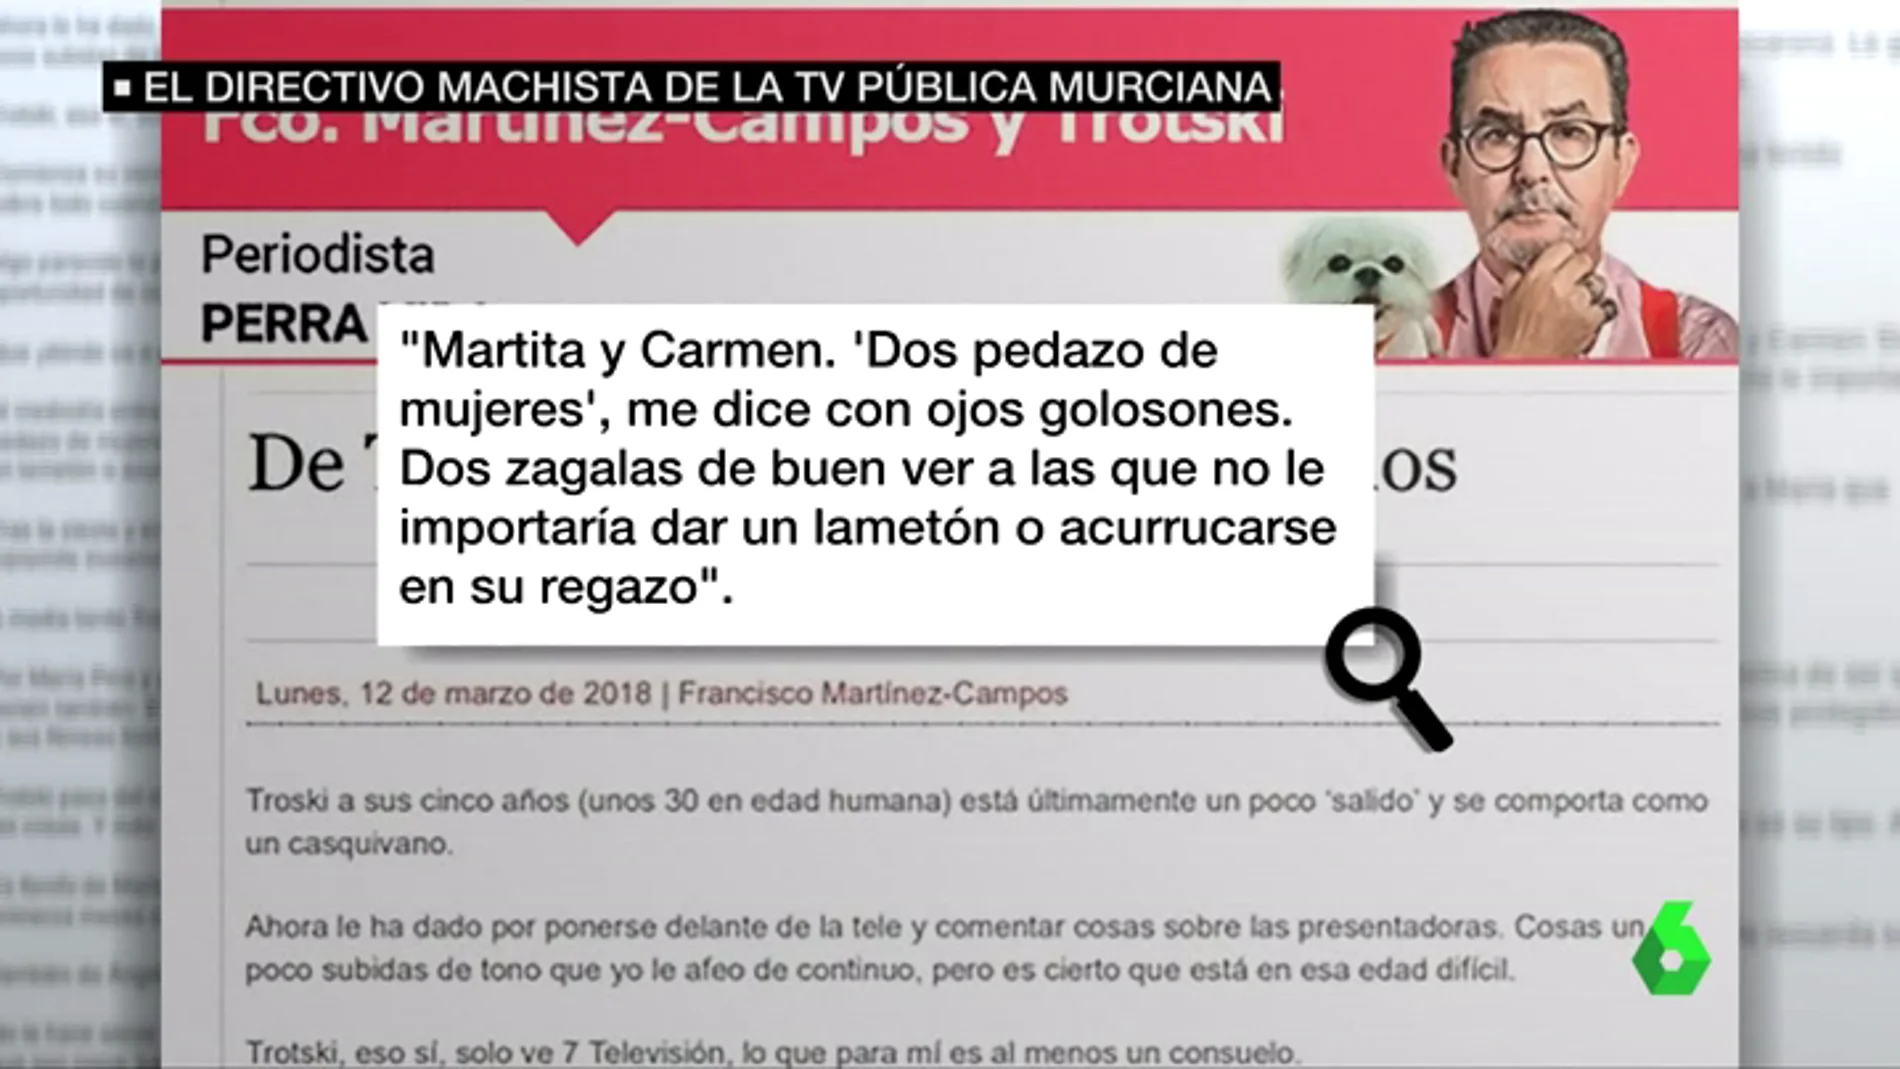 Un directivo de la televisión pública murciana habla de sus subordinadas por boca de su perro: "Hay dos 'zagalas' a las que no le importaría dar un lametón"